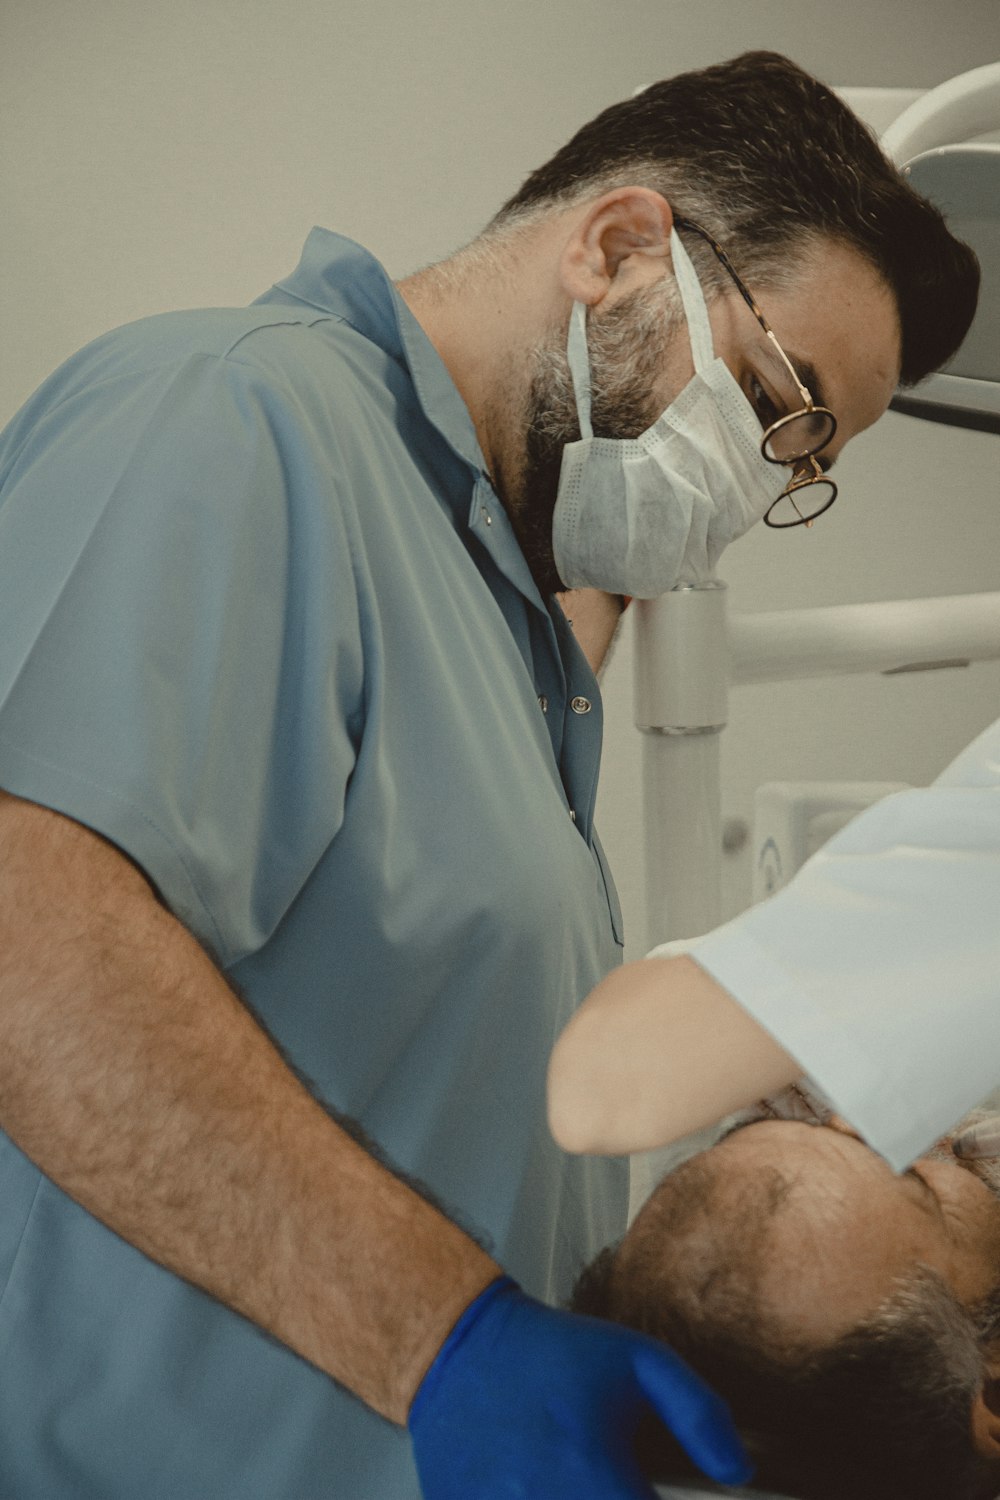 a dentist examining a patient